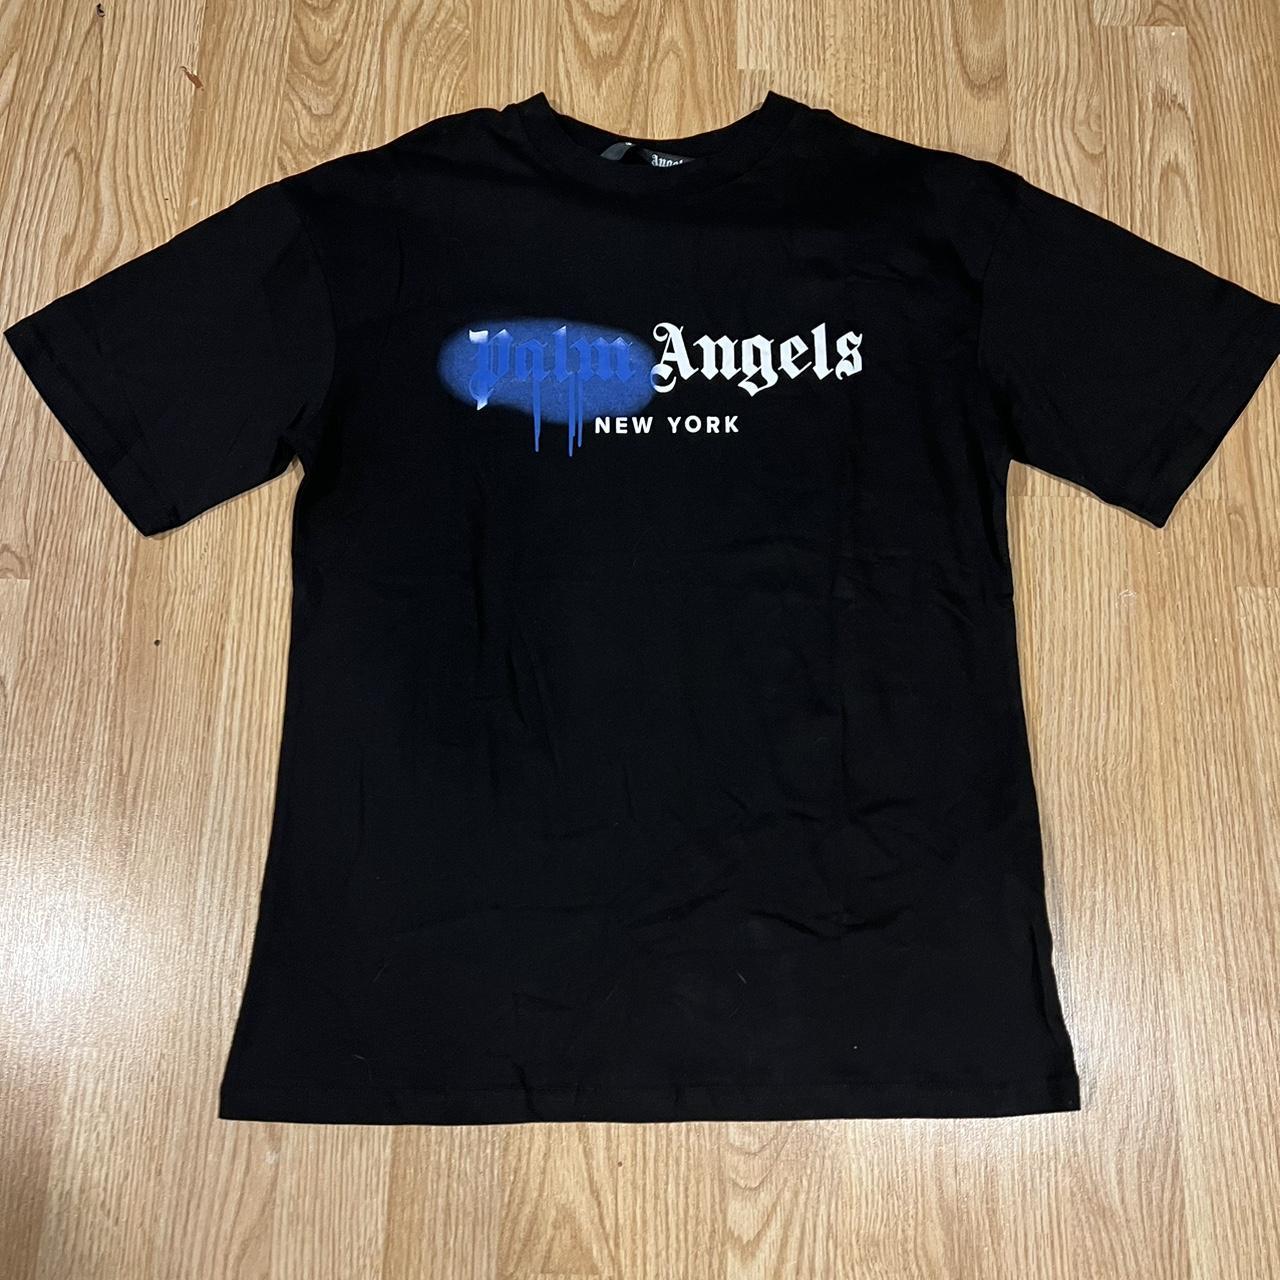 Palm angels miami logo tshirt - size small Tshirt - Depop